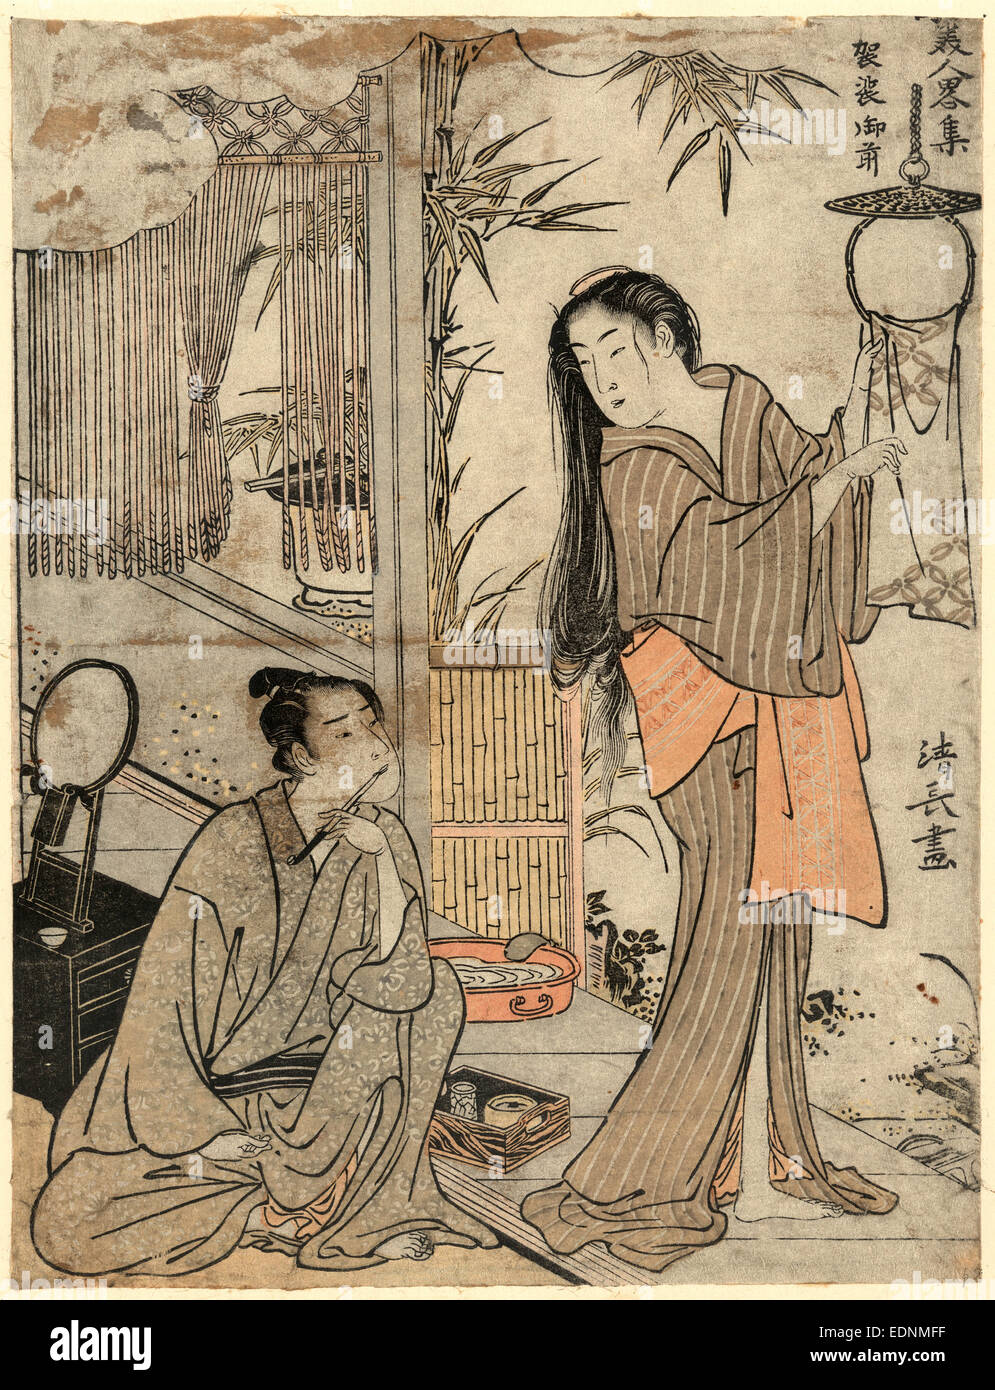 Kesagozen, Kesa gozen de la época Heian, Torii, Kiyonaga, 1752-1815, artista, [1783 o 1784], 1 Imprimir : xilografía, color ; 24,5 x 18,6 cm., impresión muestra una escena nacional con un hombre sentado en el suelo sujetando utensilios de escritura y Kesa gozen de pie cerca, su pelo abajo, habiendo recién lavadas, colgando de un trozo de tela a secas, también un lavabo cerca de ellos. Foto de stock